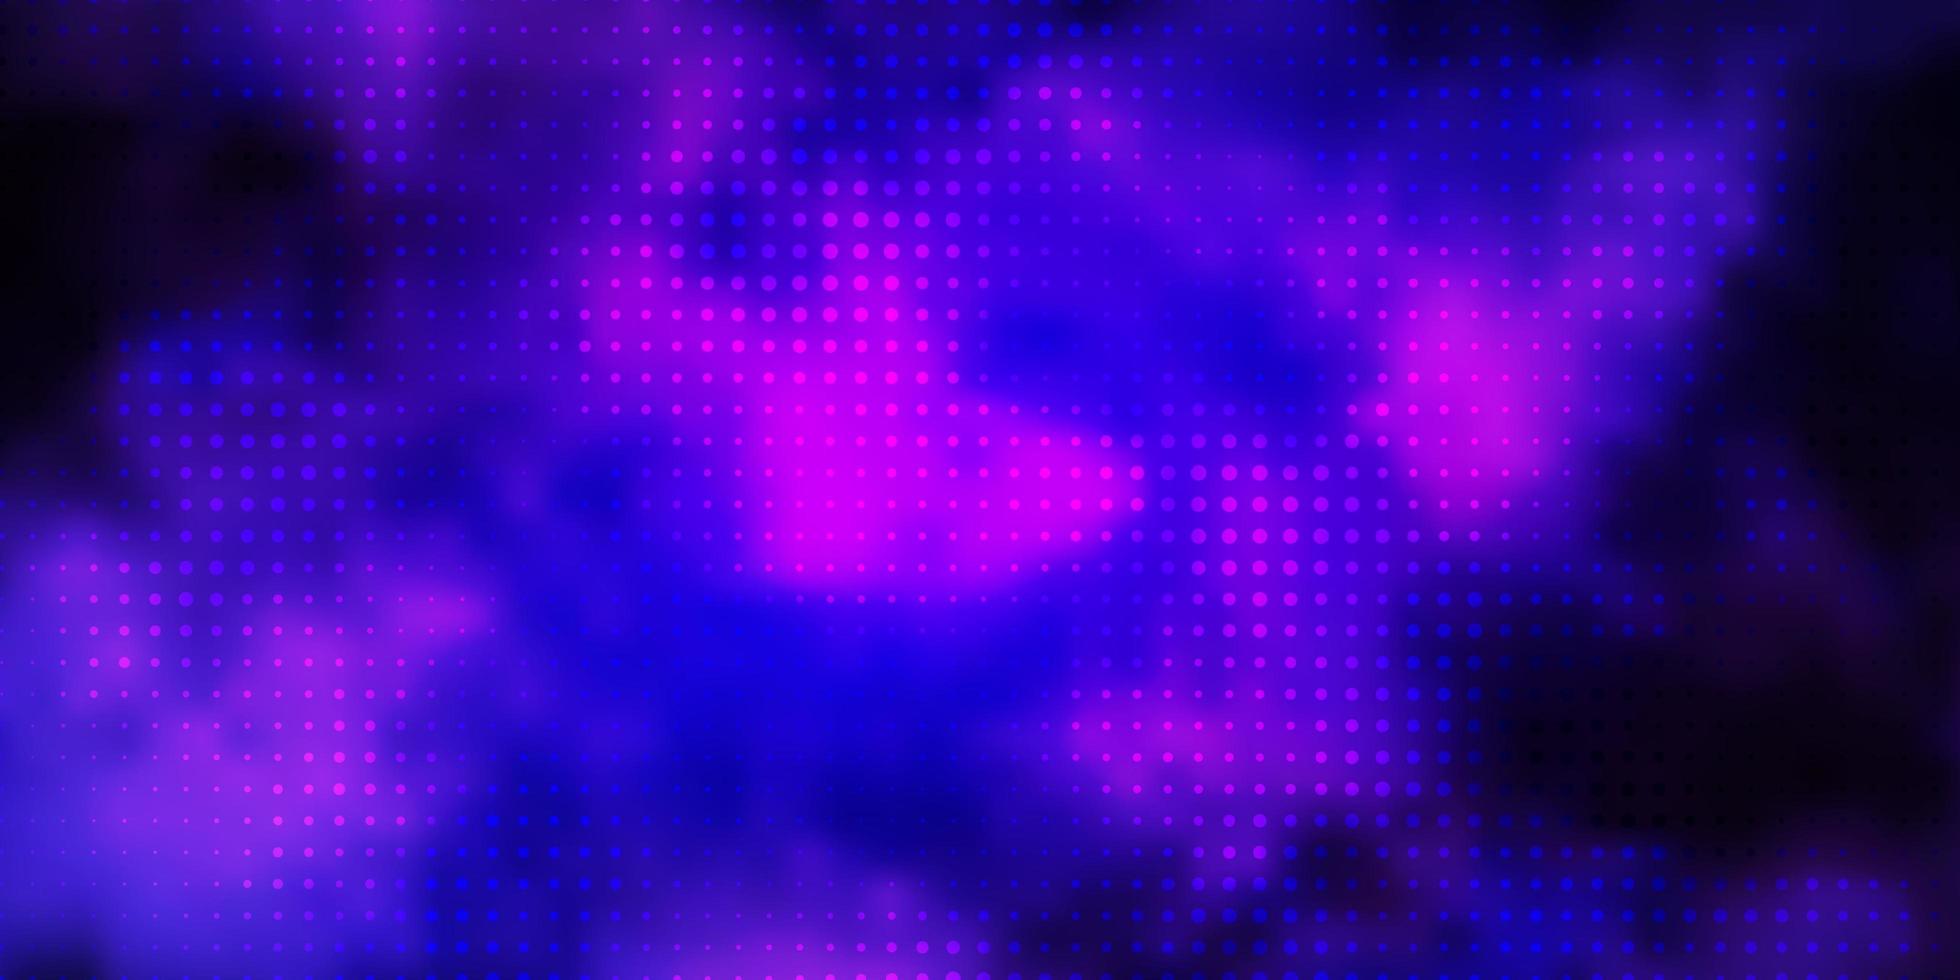 Plantilla de vector de color púrpura claro con círculos brillo ilustración abstracta con diseño de gotas de colores para carteles, pancartas